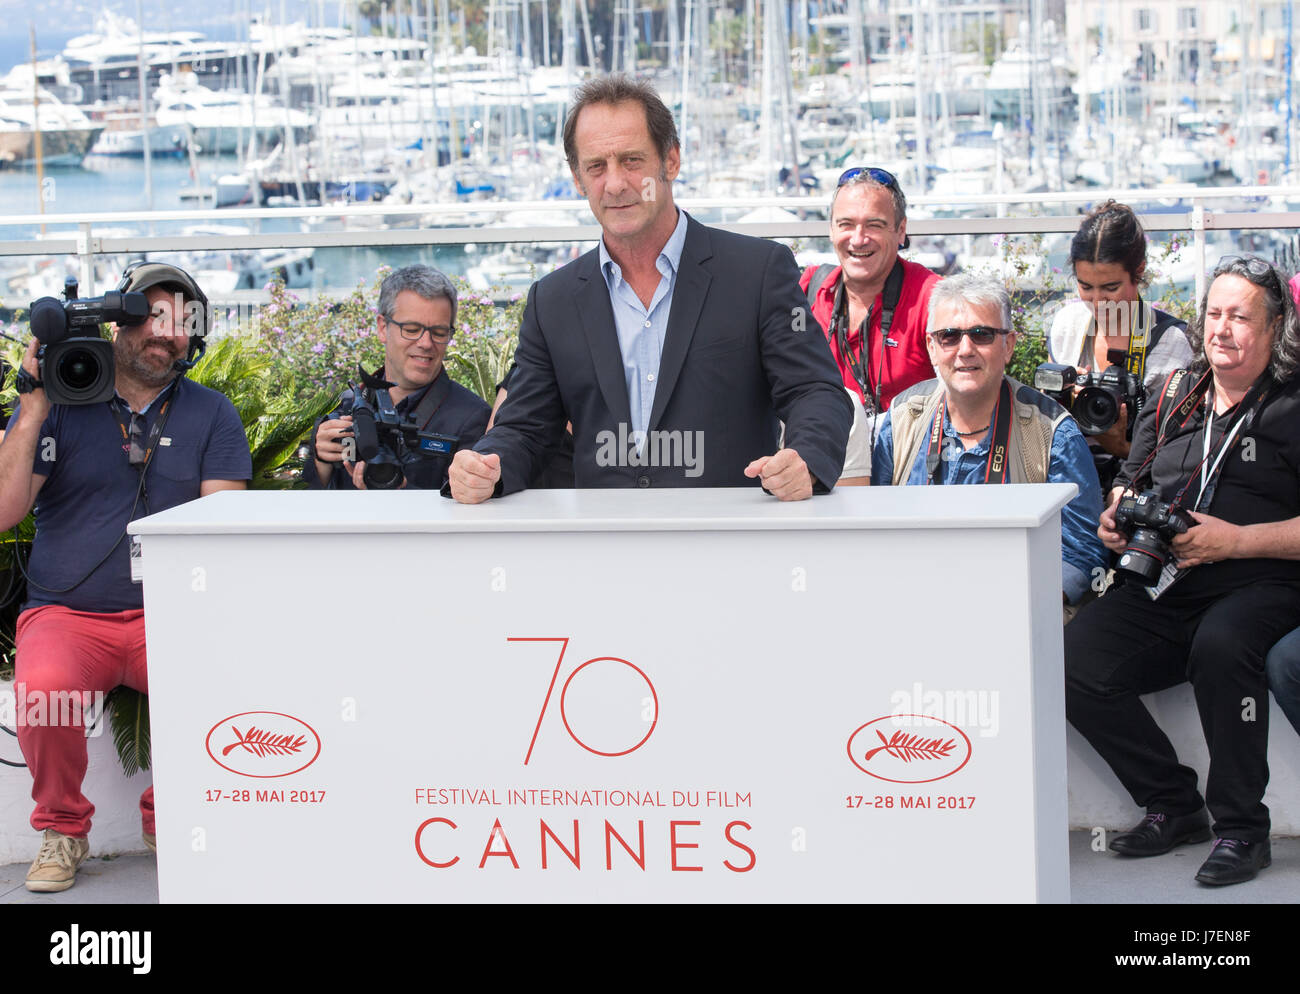 Cannes, France. 24 mai, 2017. Acteur Vincent Lindon pose pour le photocall du film "Rodin" annuel lors de la 70e édition du Festival de Cannes au Palais des Festivals de Cannes, France, le 24 mai 2017. Source : Xinhua/Alamy Live News Banque D'Images